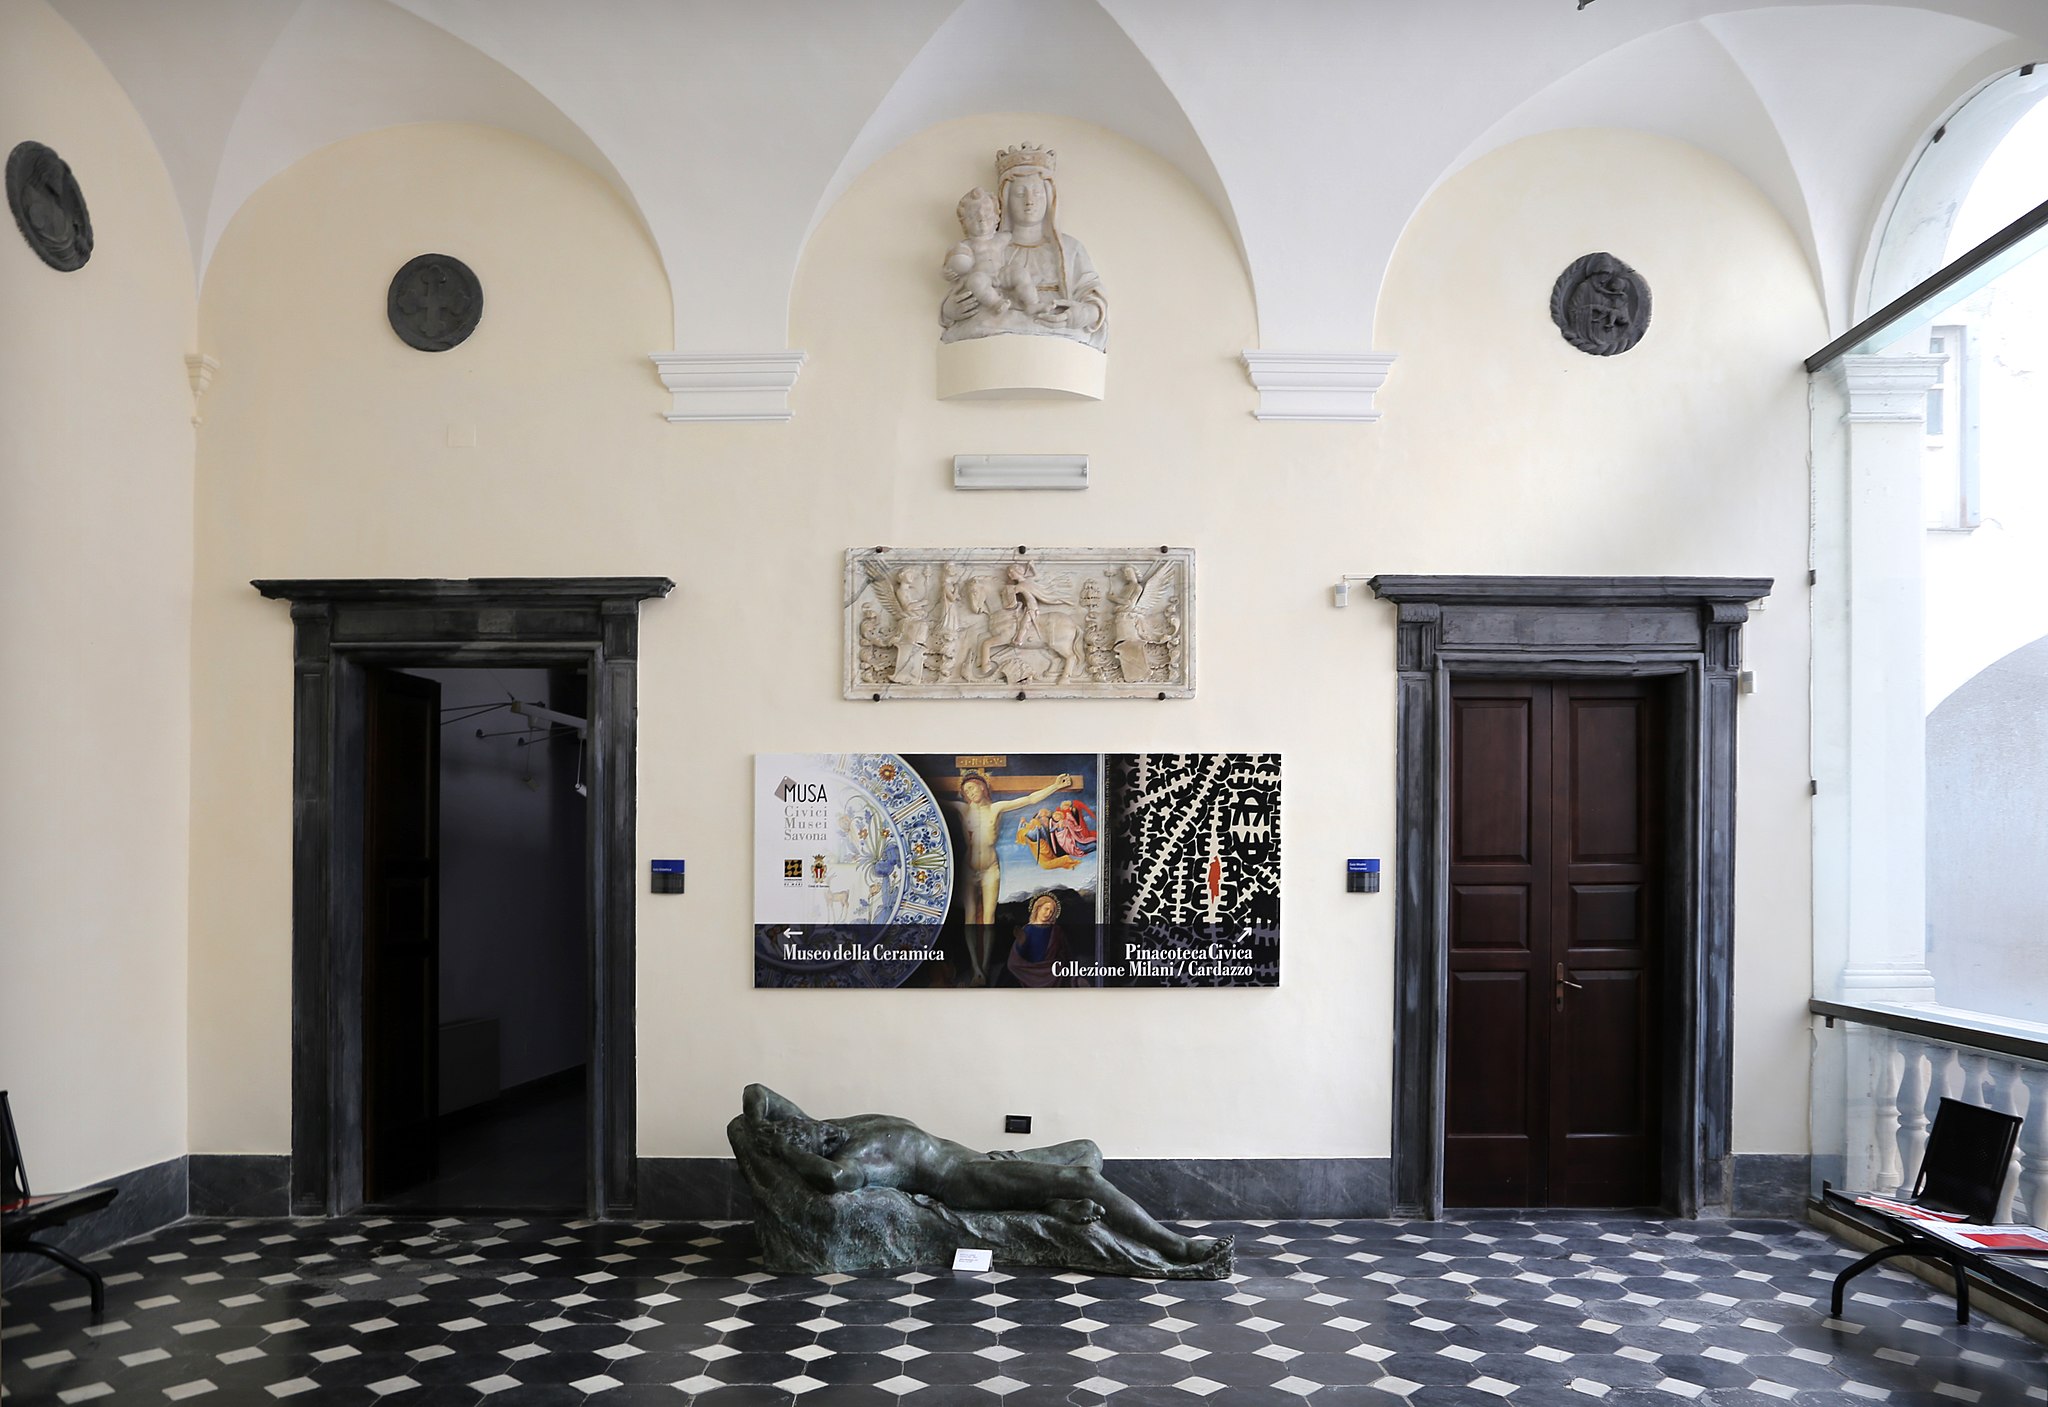 Sailko, Androne del Museo d’arte di Palazzo Gavotti, con “Adone che dorme” di Renata Cuneo (bronzo, 1931) Savona, 2018, fotografia digitale.